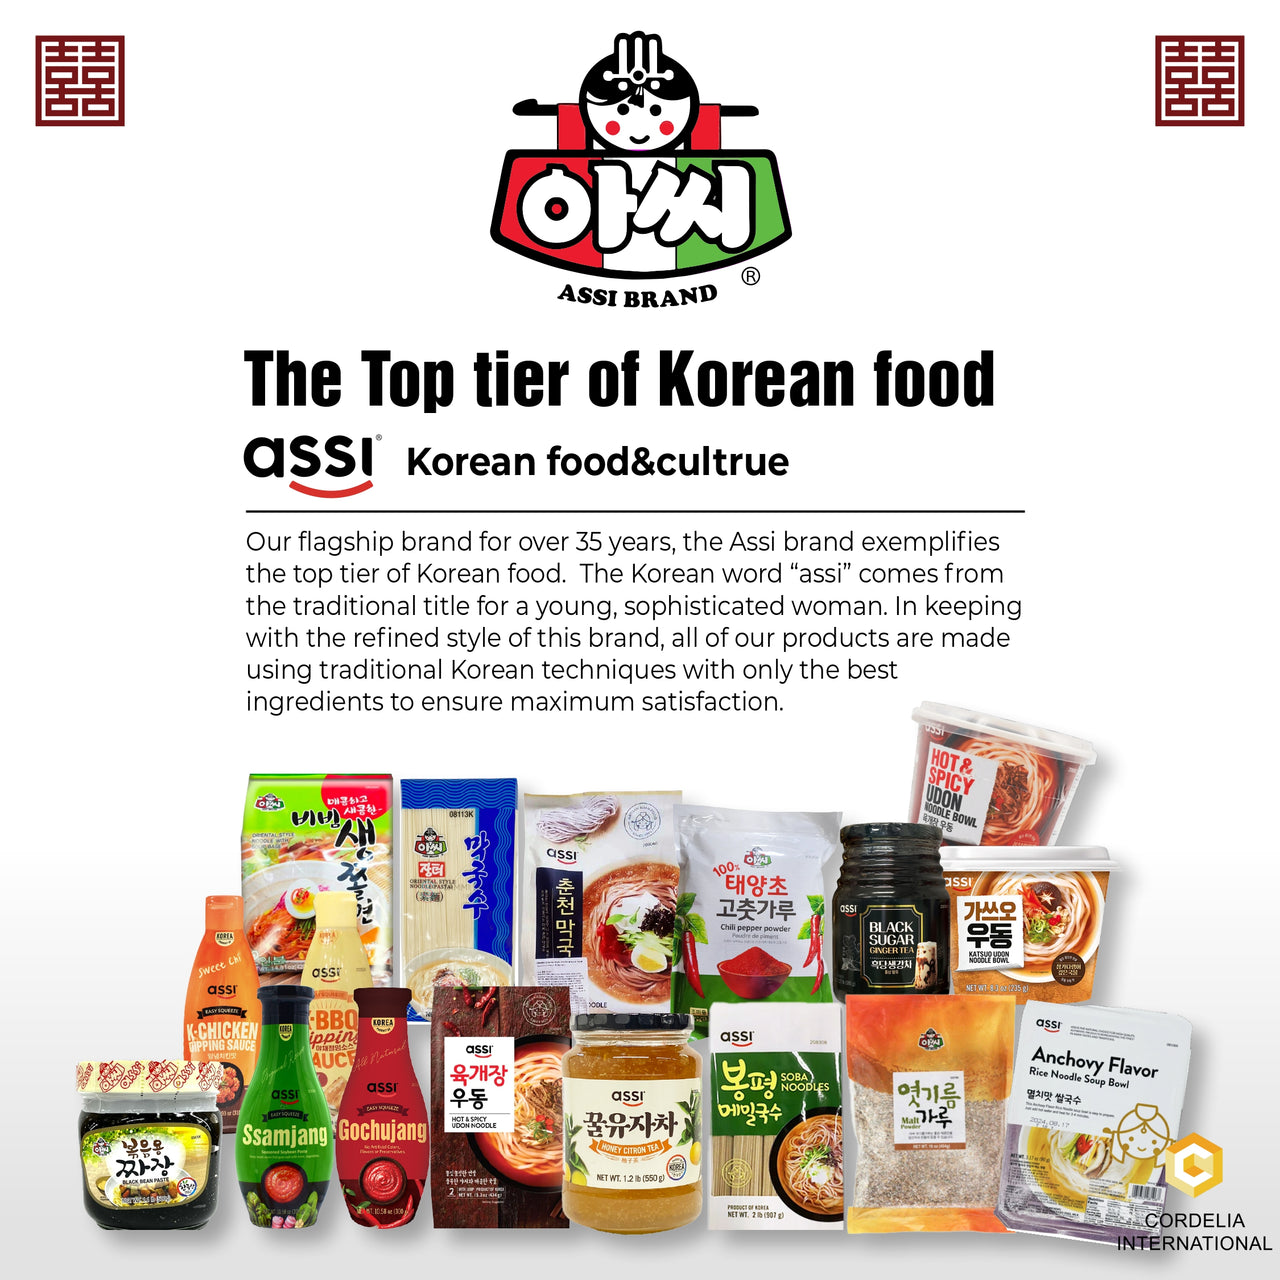 Assi - The Top tier of Korean food